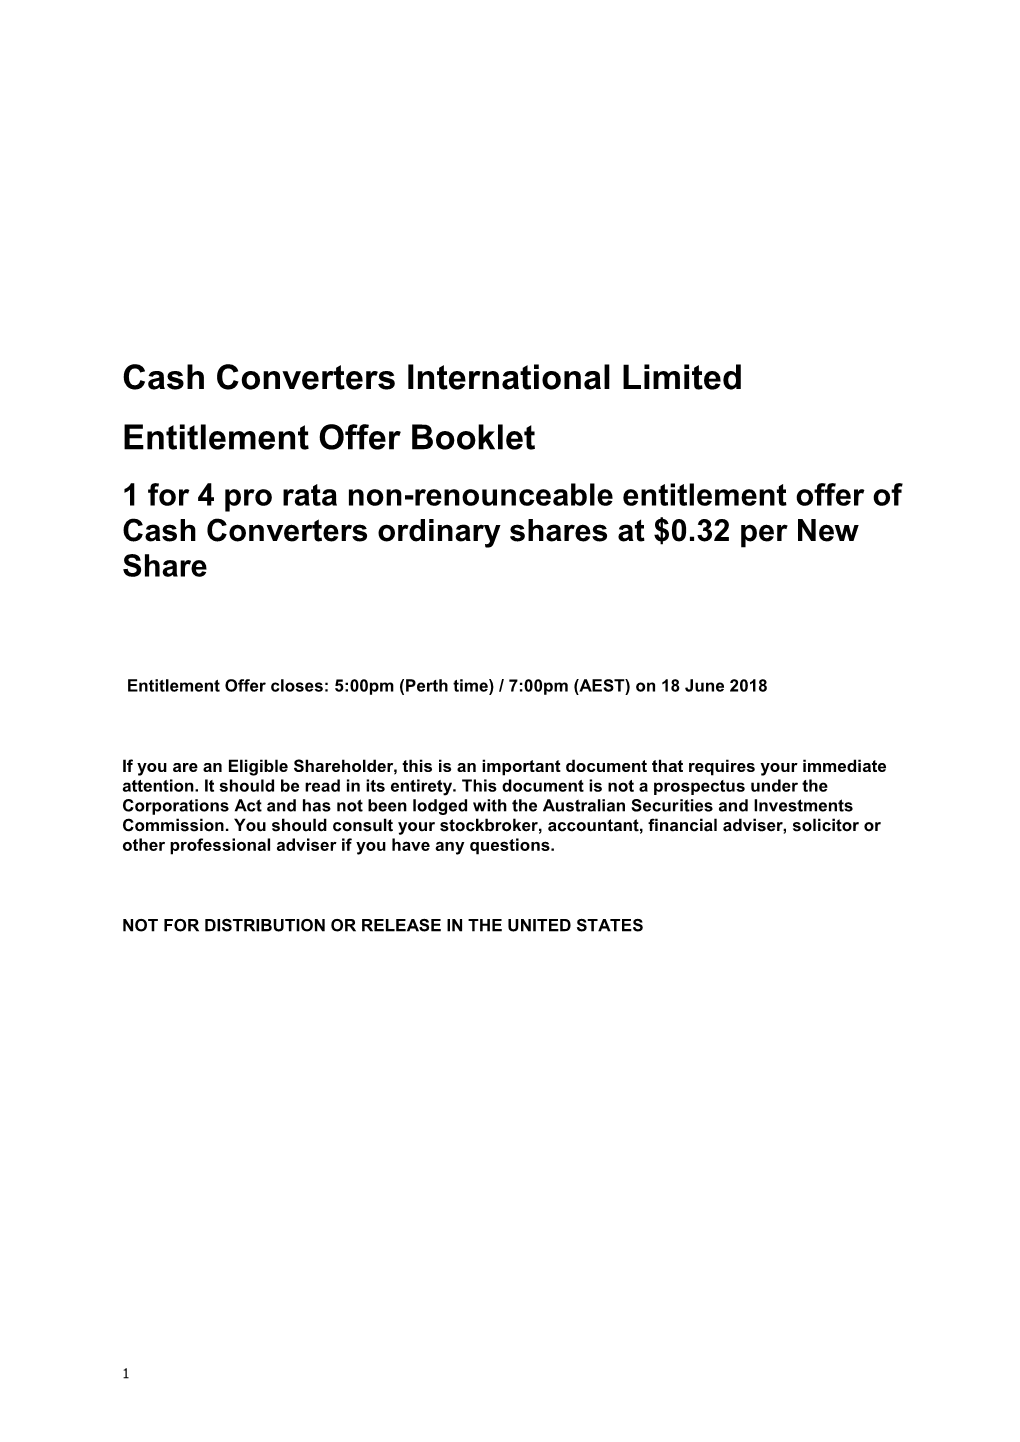 Cash Converters International Limited Entitlement Offer Booklet